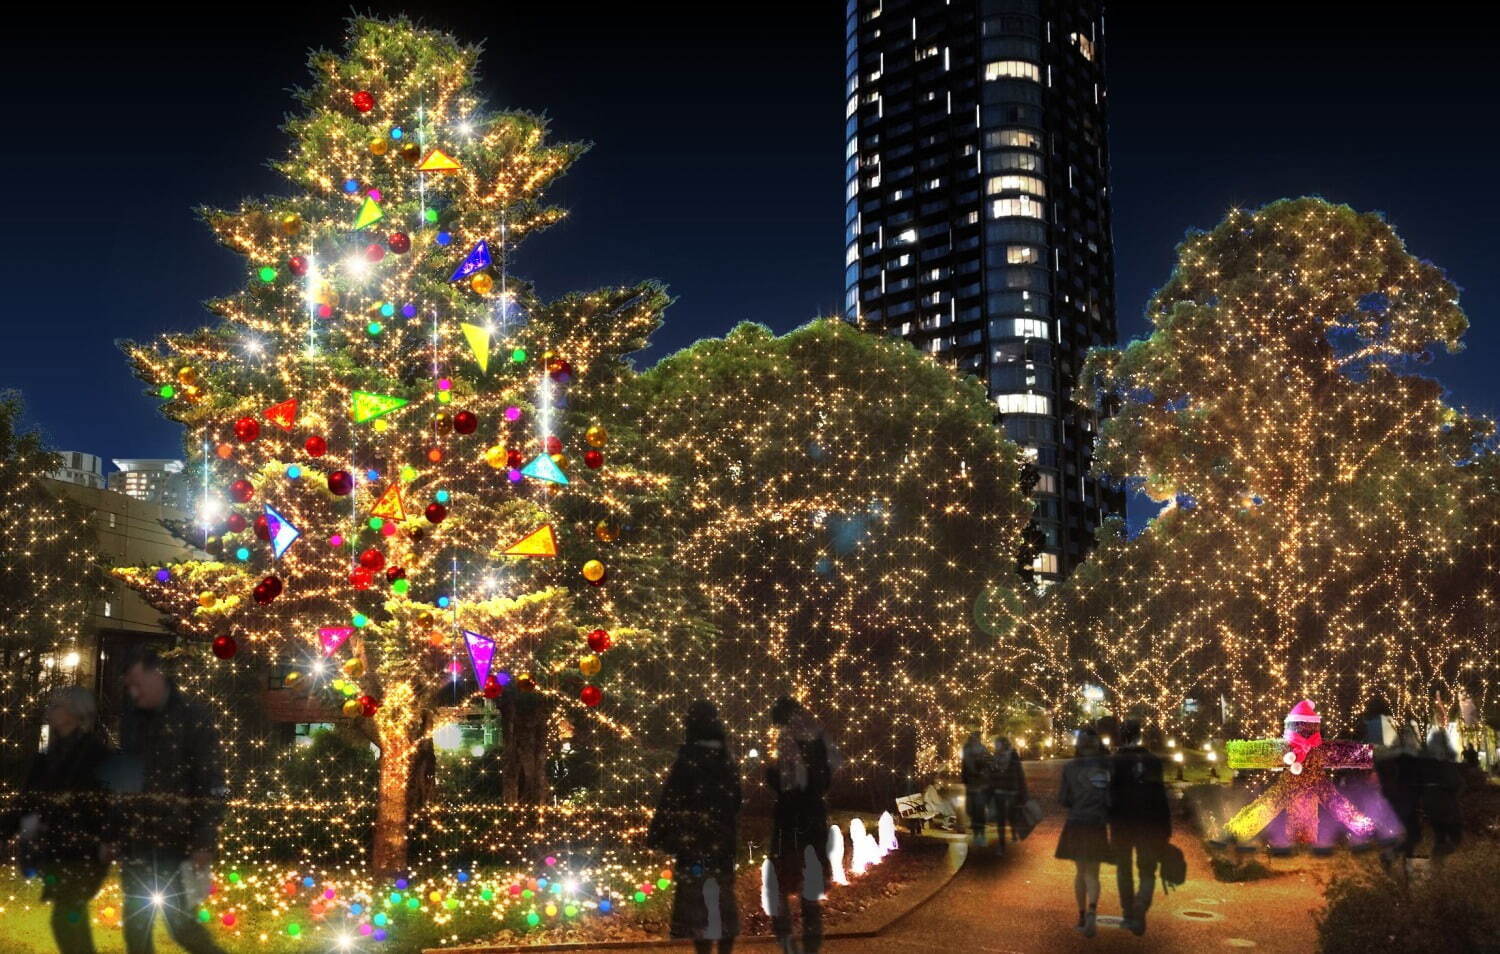 Tokyo Midtown Winter Illumination 2022